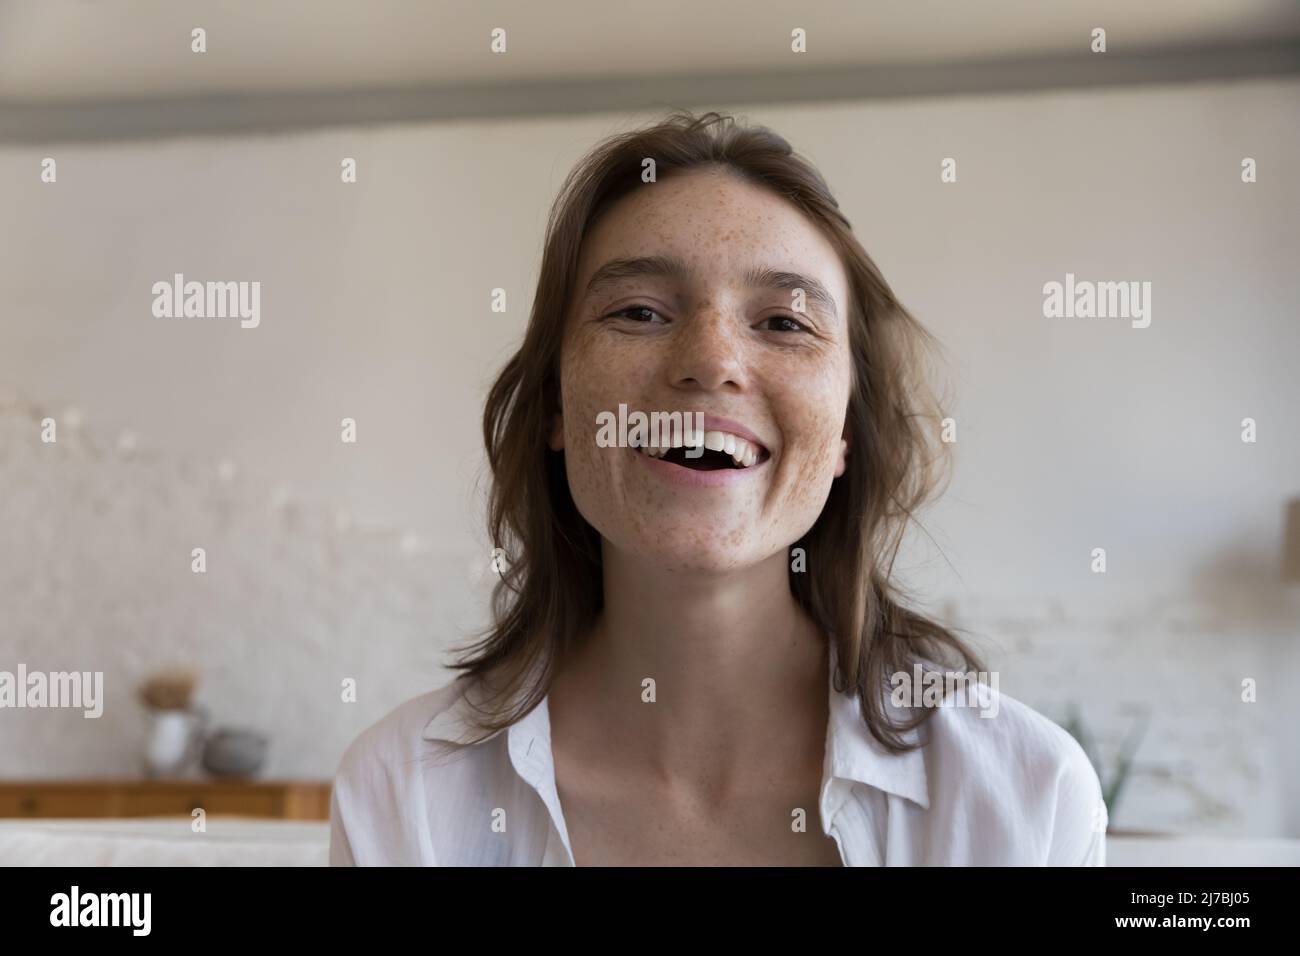 Aufgeregt fröhlich Sommersprossen Bloggerin Mädchen Kopf Screenshot Bildschirmansicht Porträt Stockfoto